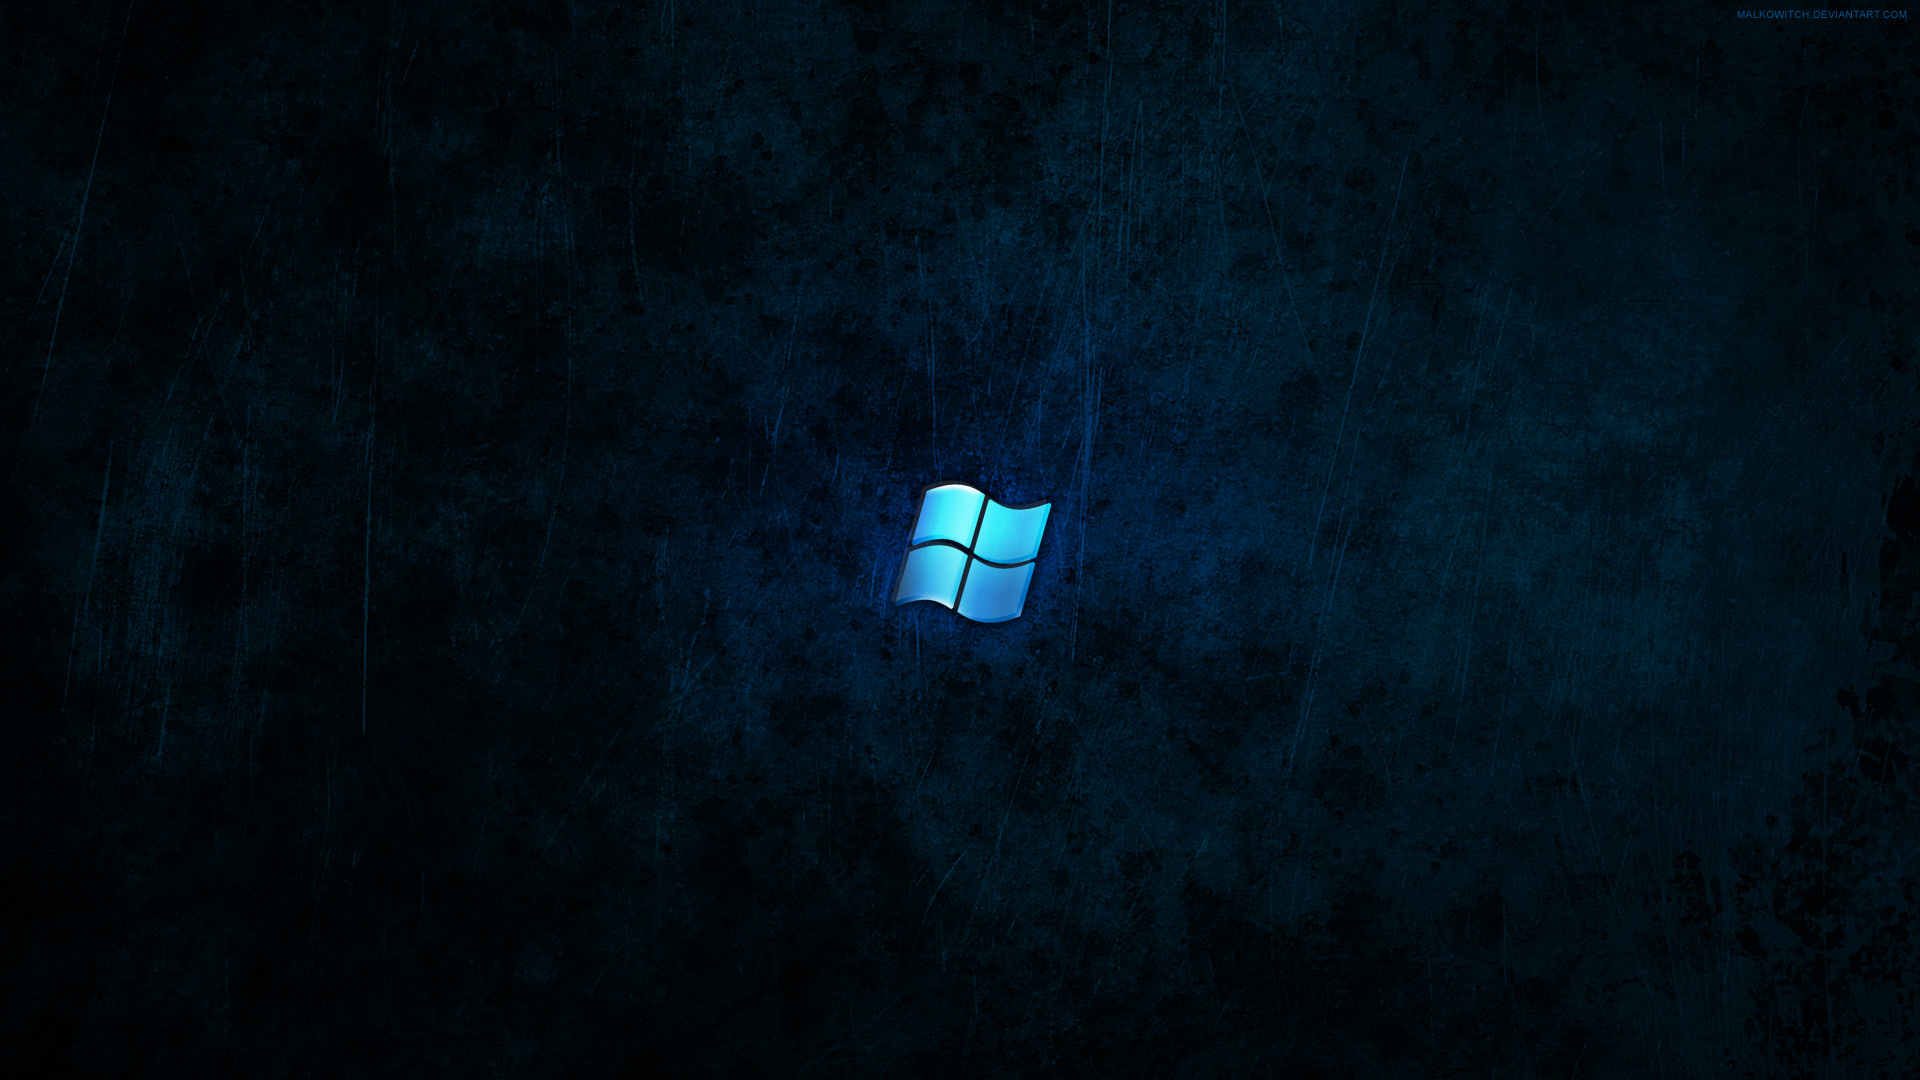 Hãy khám phá hình nền Windows 10 Dark Wallpaper đầy ấn tượng và tạo cảm giác mạnh mẽ, đặc biệt là với những tín đồ của chủ đề tối. Bạn sẽ được trải nghiệm không gian để lại ấn tượng đậm nét trên màn hình của mình với chất lượng độ phân giải tuyệt vời.